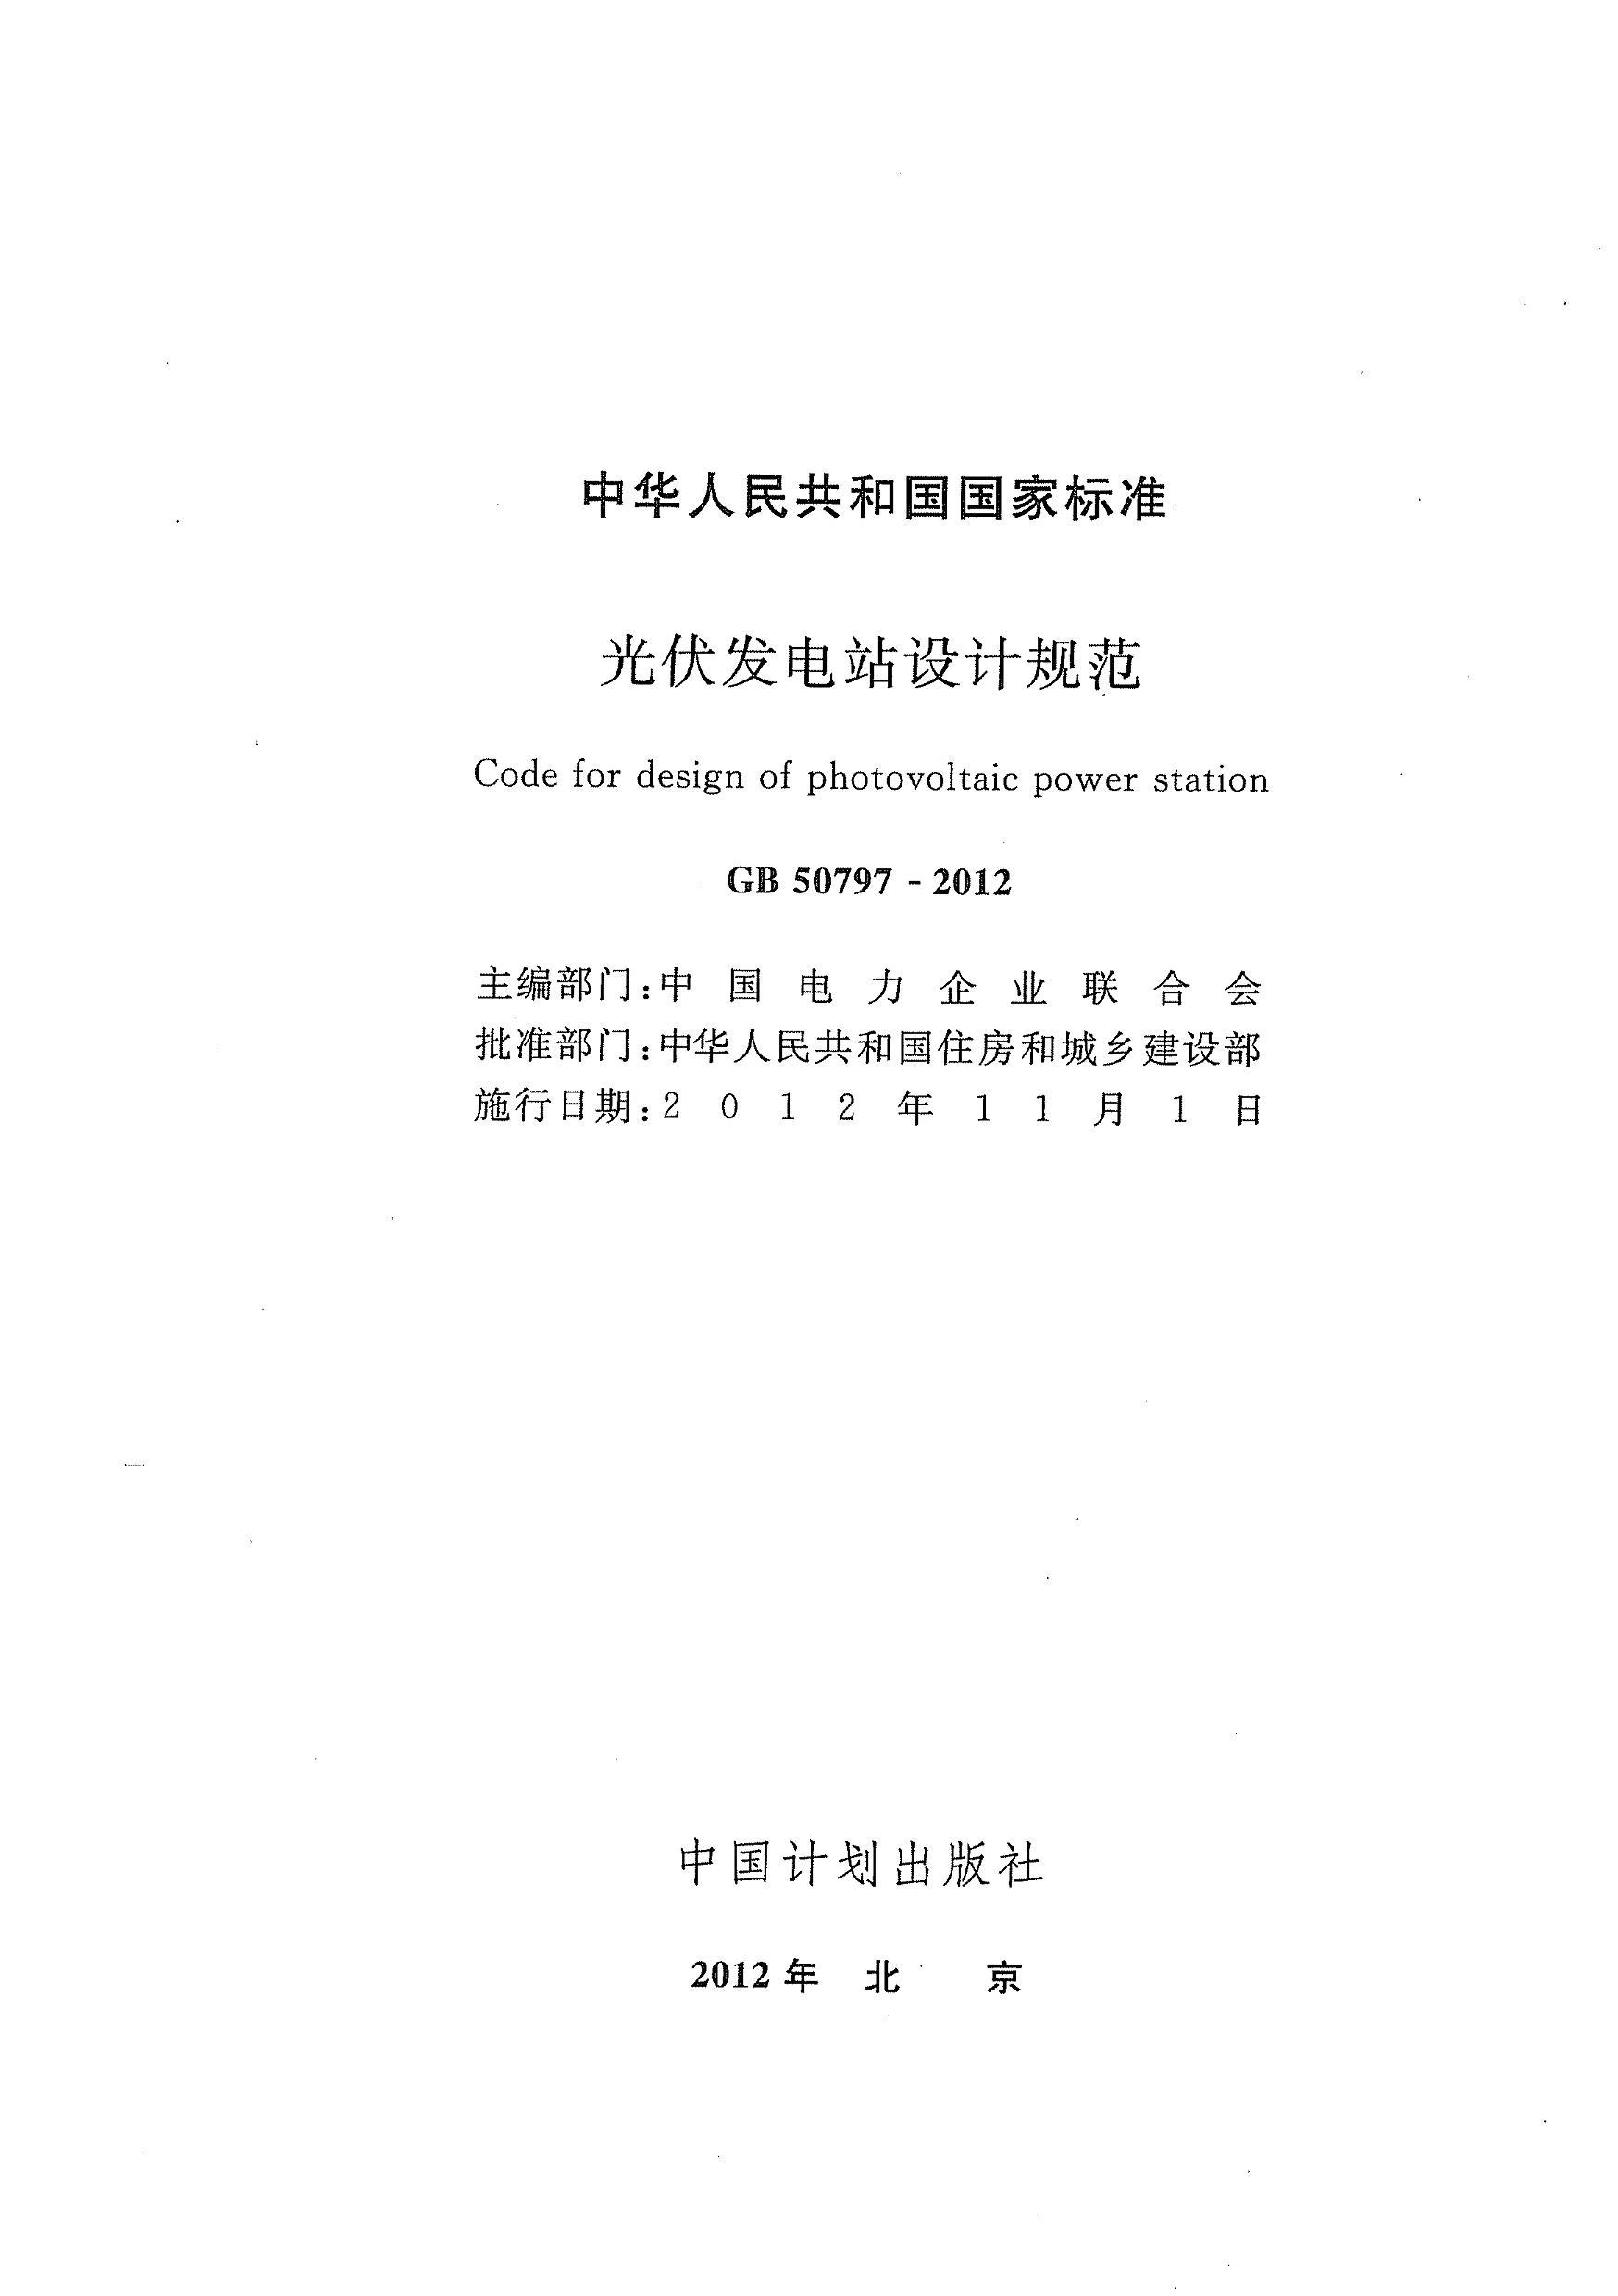 GB 50797-2012 վƹ淶.pdf2ҳ